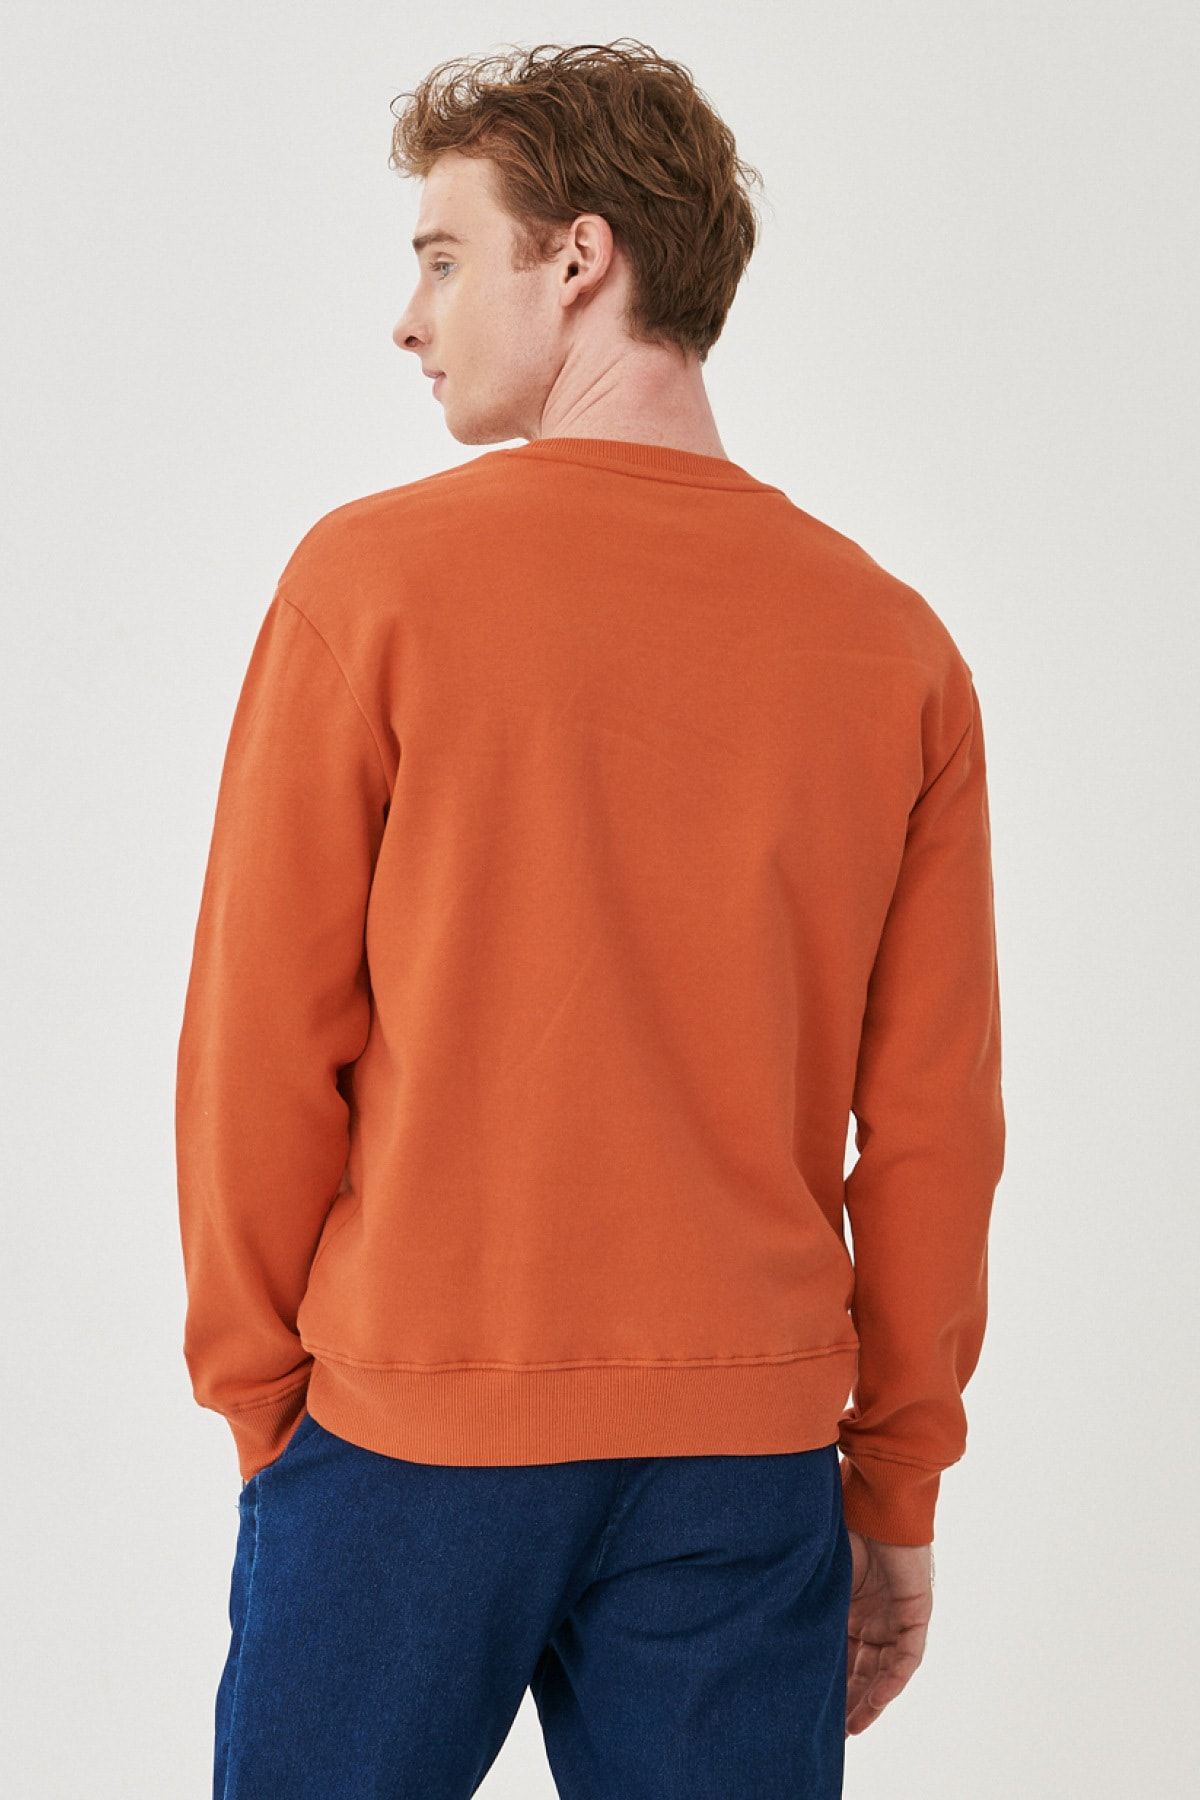 Cut Neck Lee Cotton Regular - Sweatshirt Normal 100% Fit Crew Trendyol